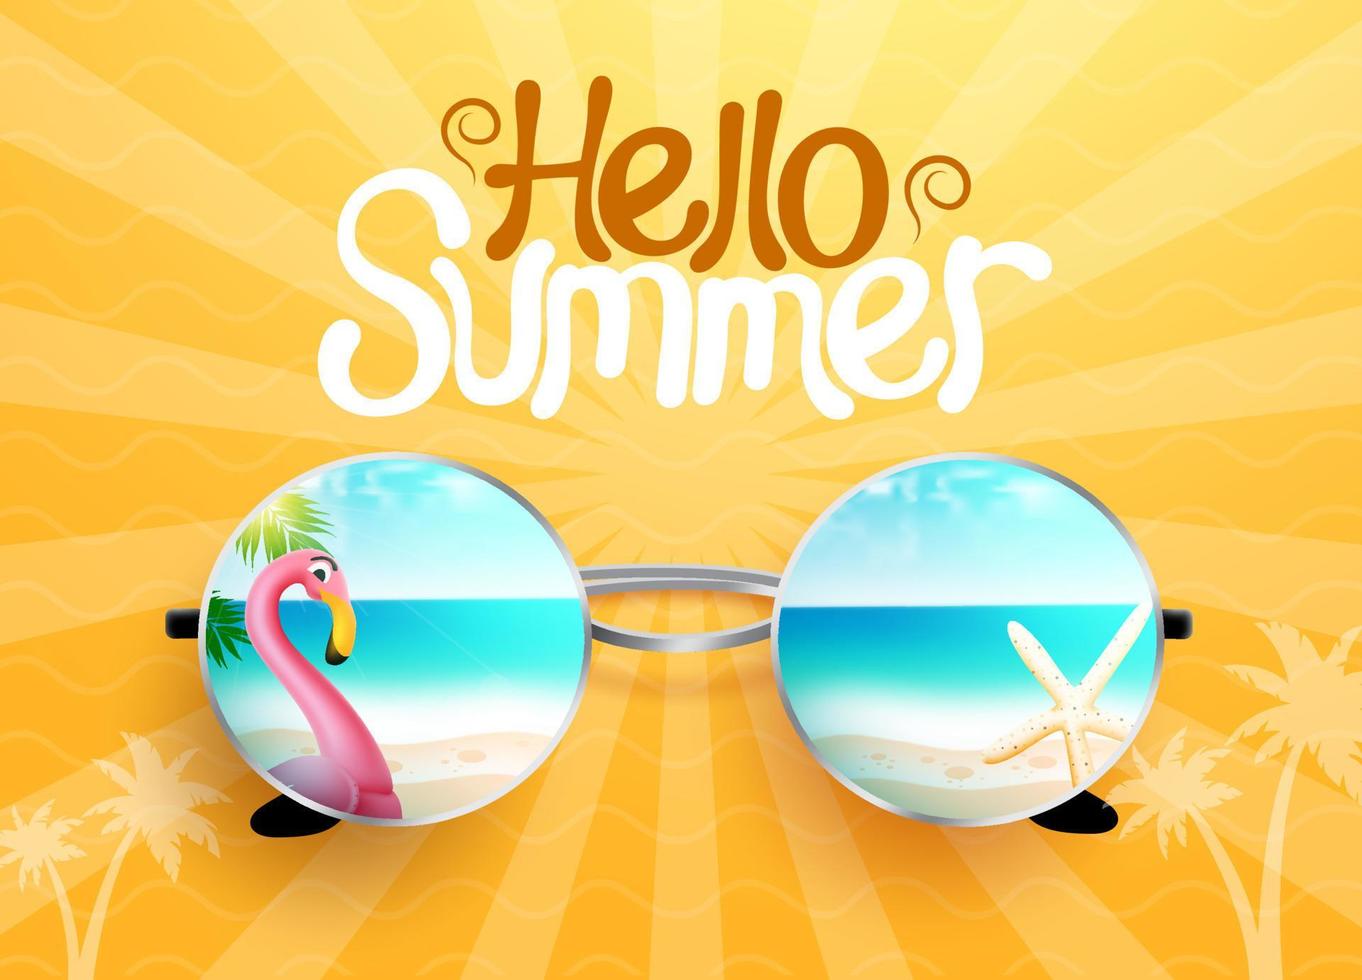 Sommerferien-Grußvektordesign. hallo sommertext im gelben musterhintergrund mit strand und flamingo in der sonnenbrillenreflexion für gruß der tropischen saison. Vektor-Illustration. vektor